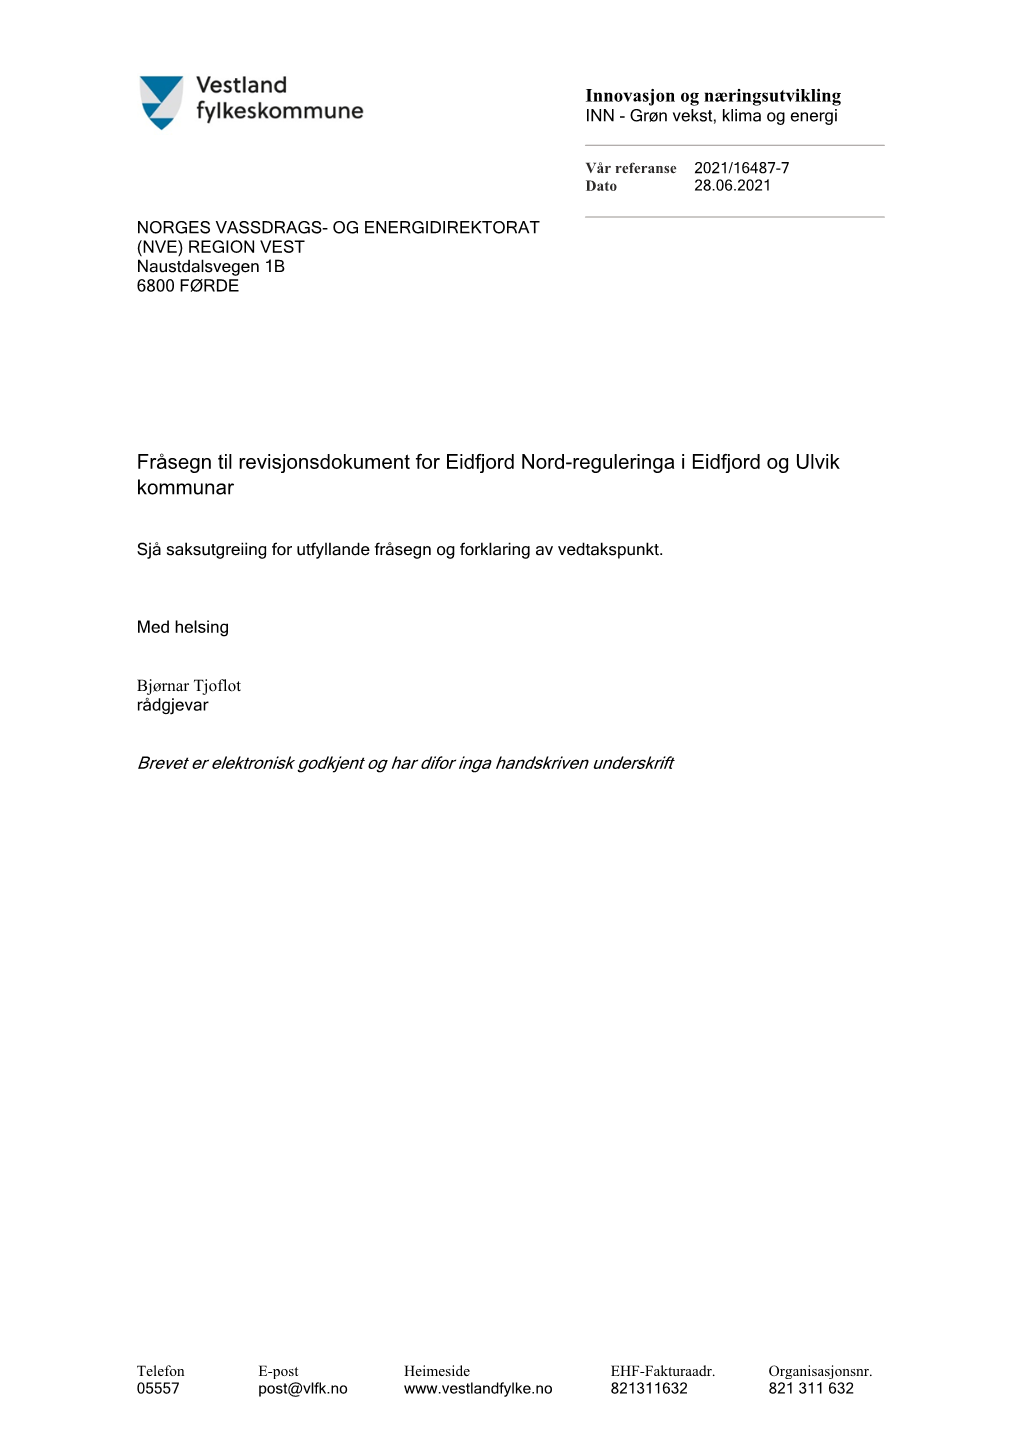 Fråsegn Til Revisjonsdokument for Eidfjord Nord-Reguleringa I Eidfjord Og Ulvik Kommunar